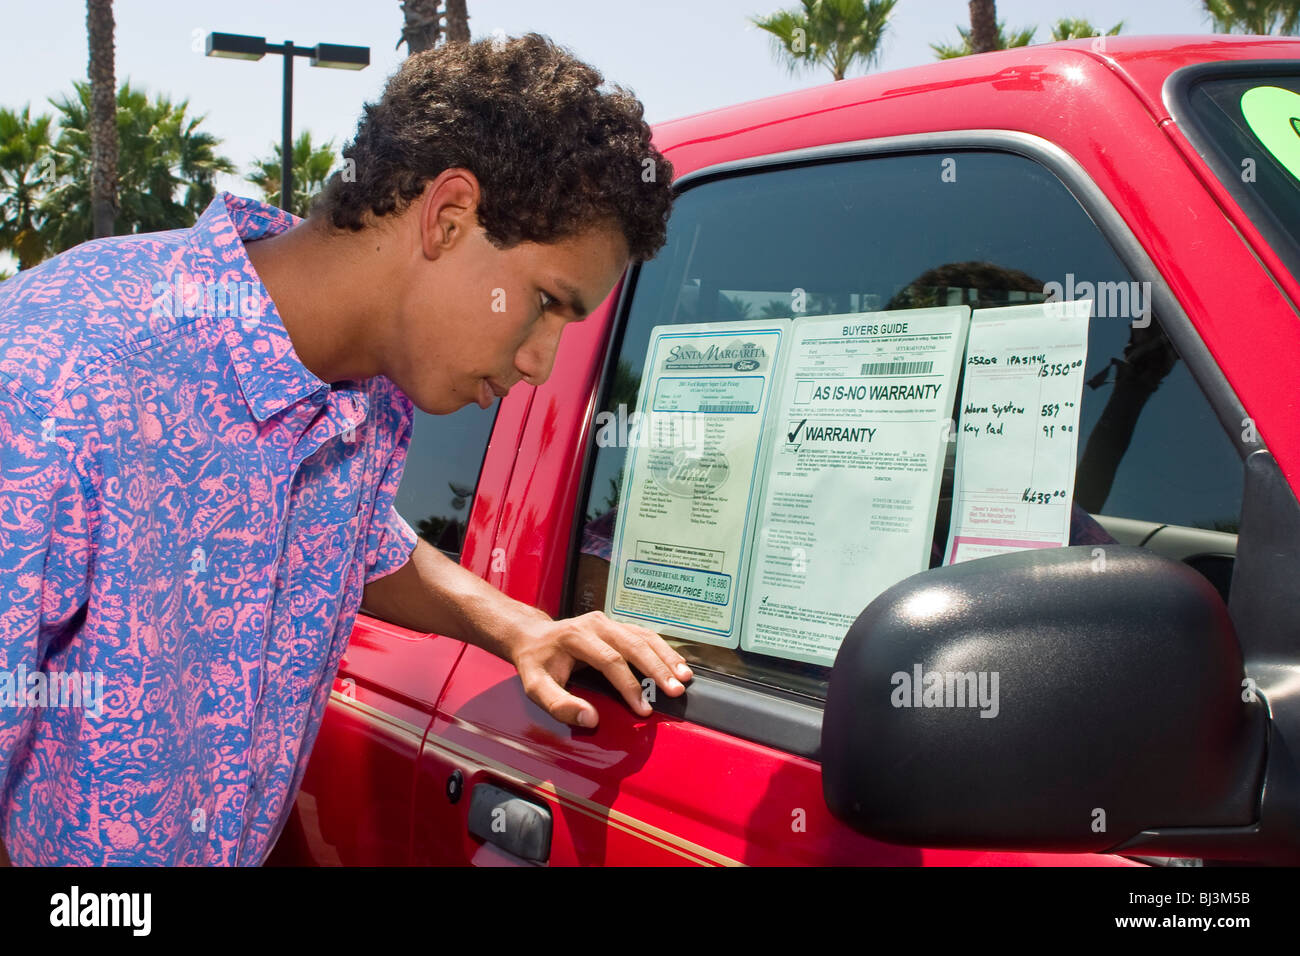 16-18 ans ans hispaniques/African American young man shopping pour son premier véhicule concessionnaire concessionnaire Ford vente voiture lot. Californie Banque D'Images